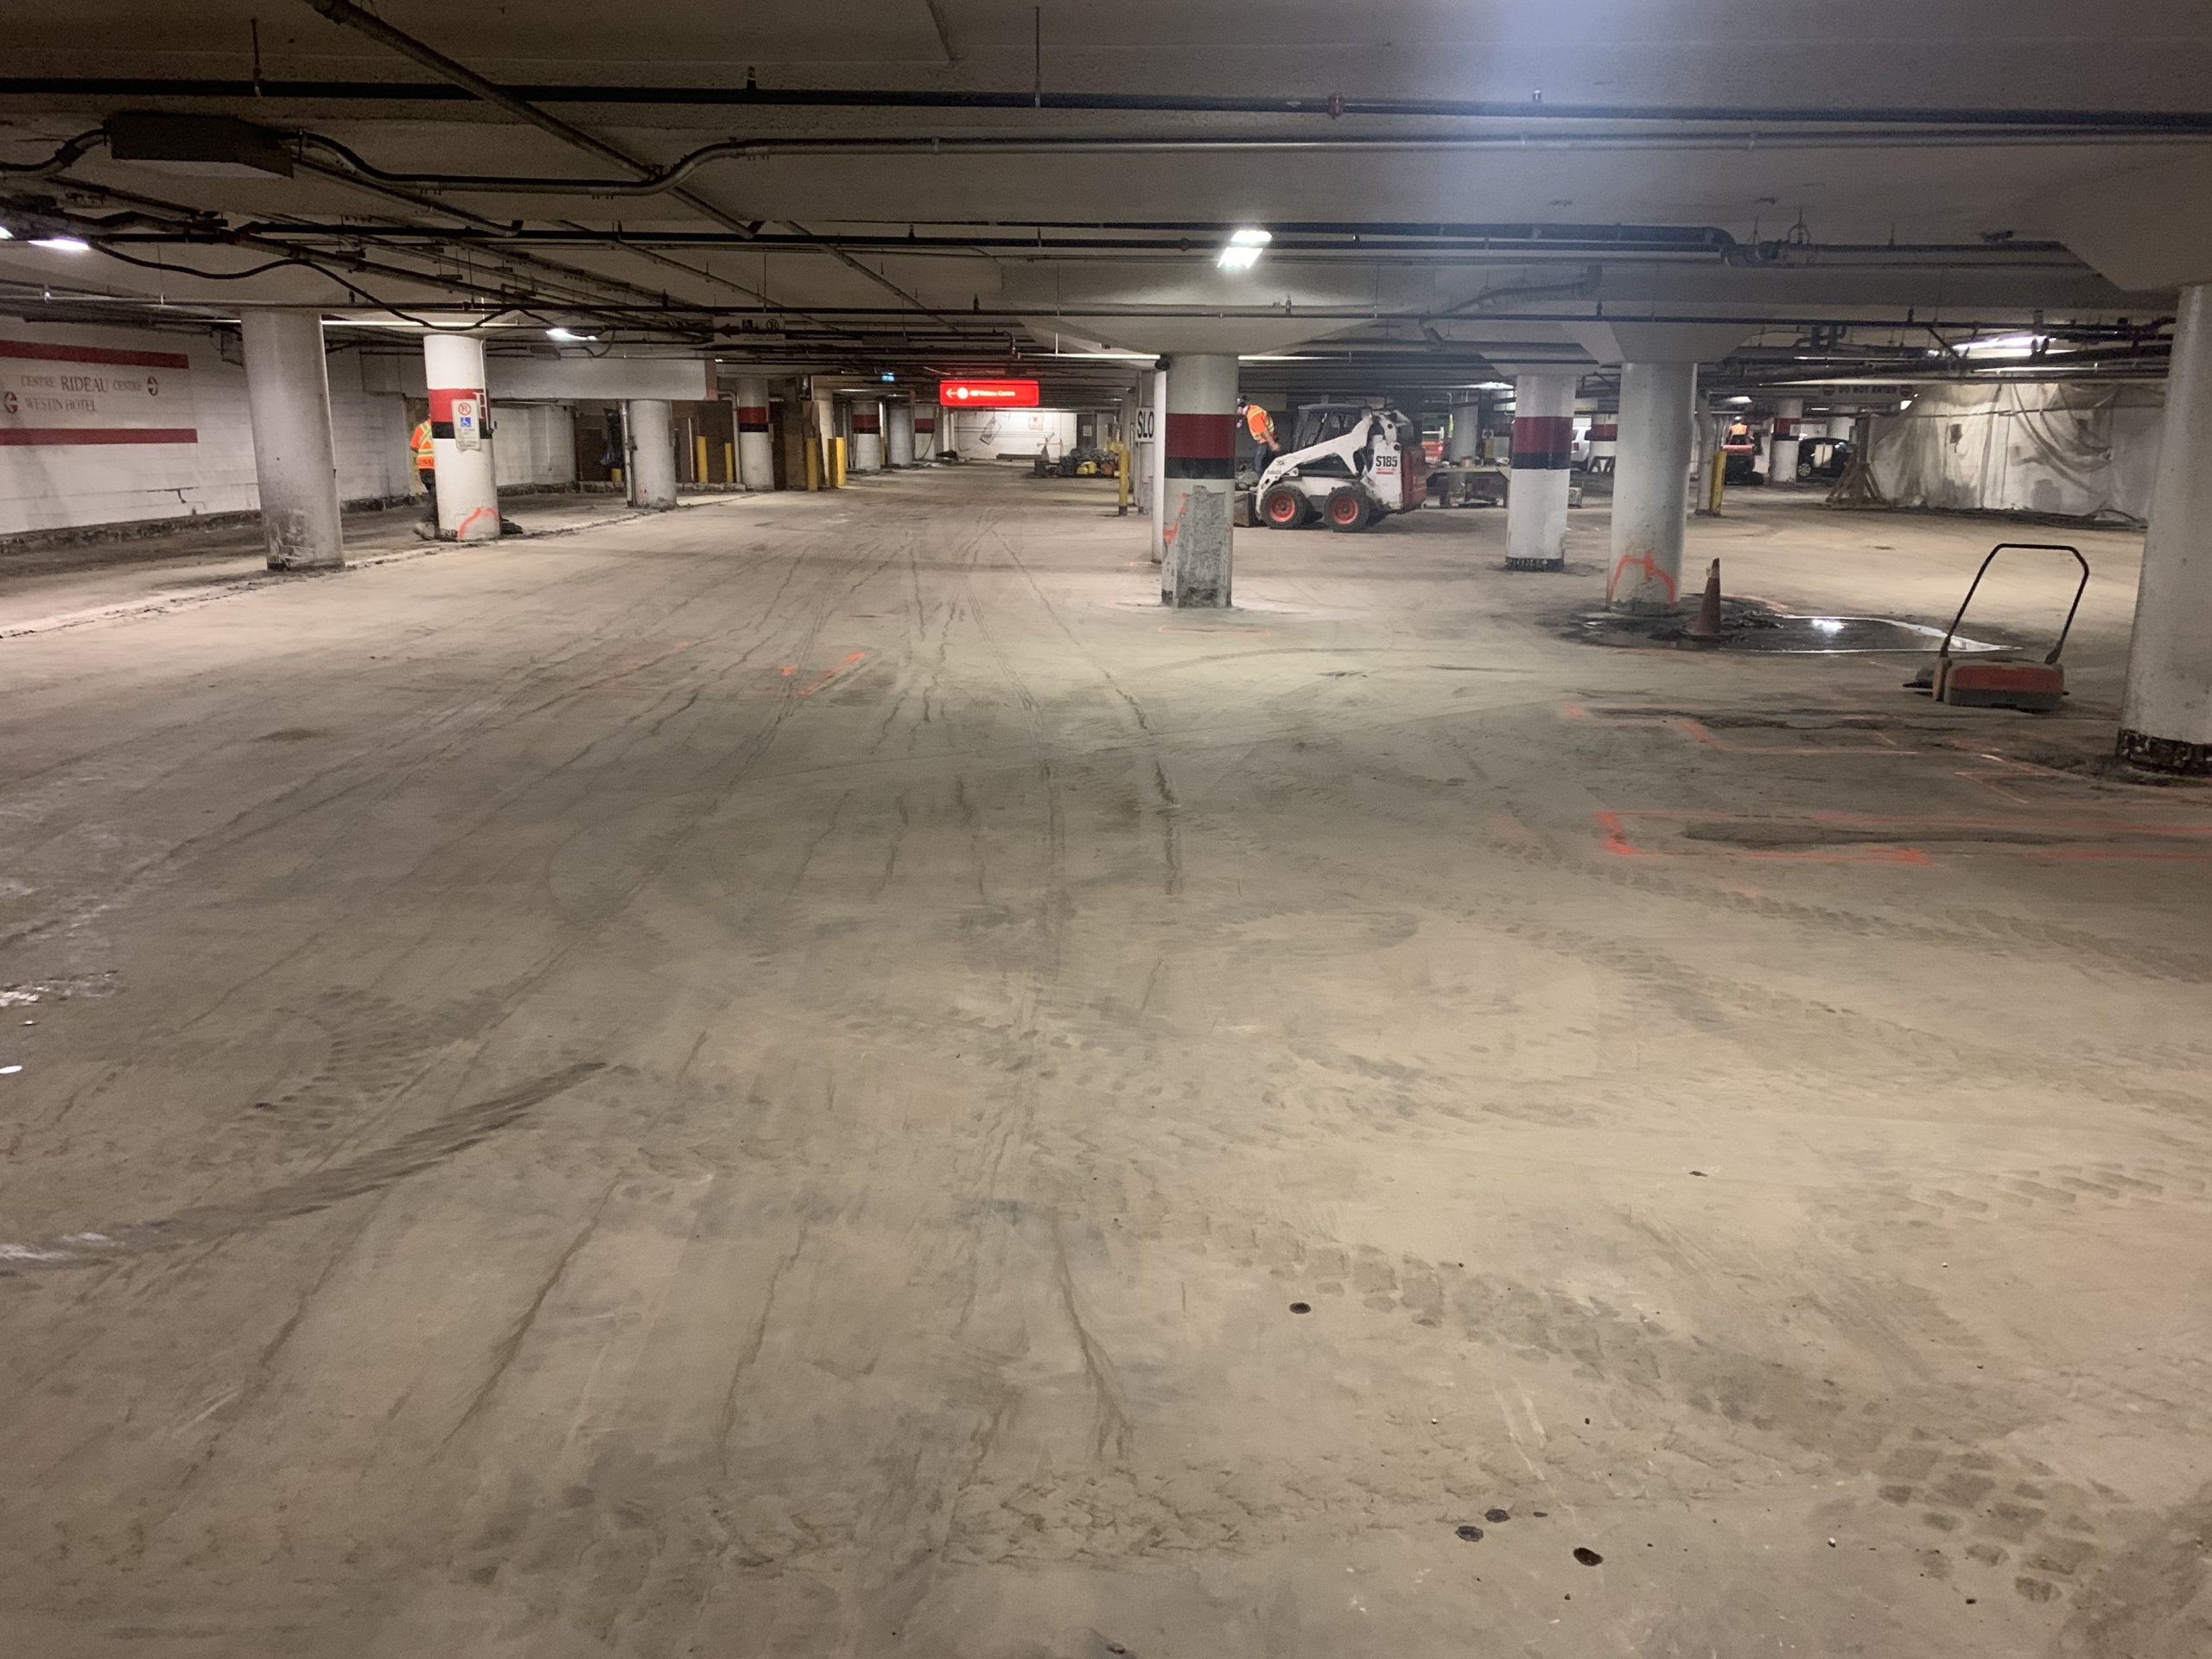 Rideau Center parking garage restoration project, work in progress